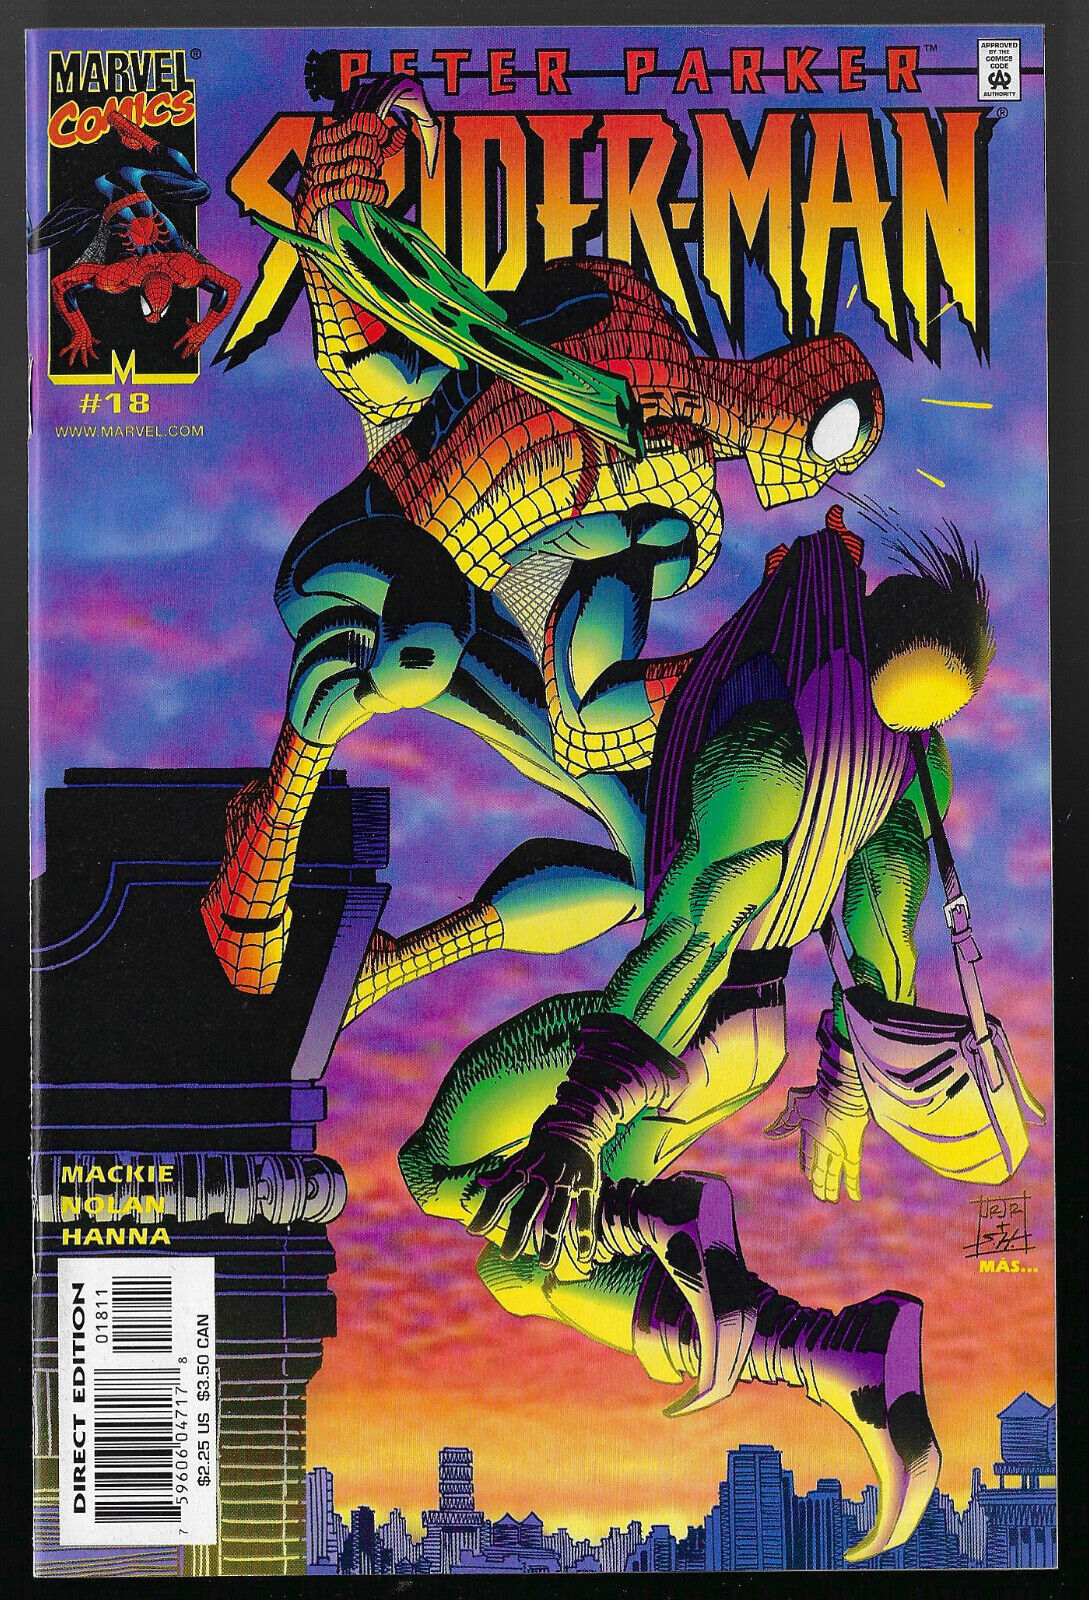 Peter Parker, Spider-Man #18  - Marvel, 2000 - $5. flat ship